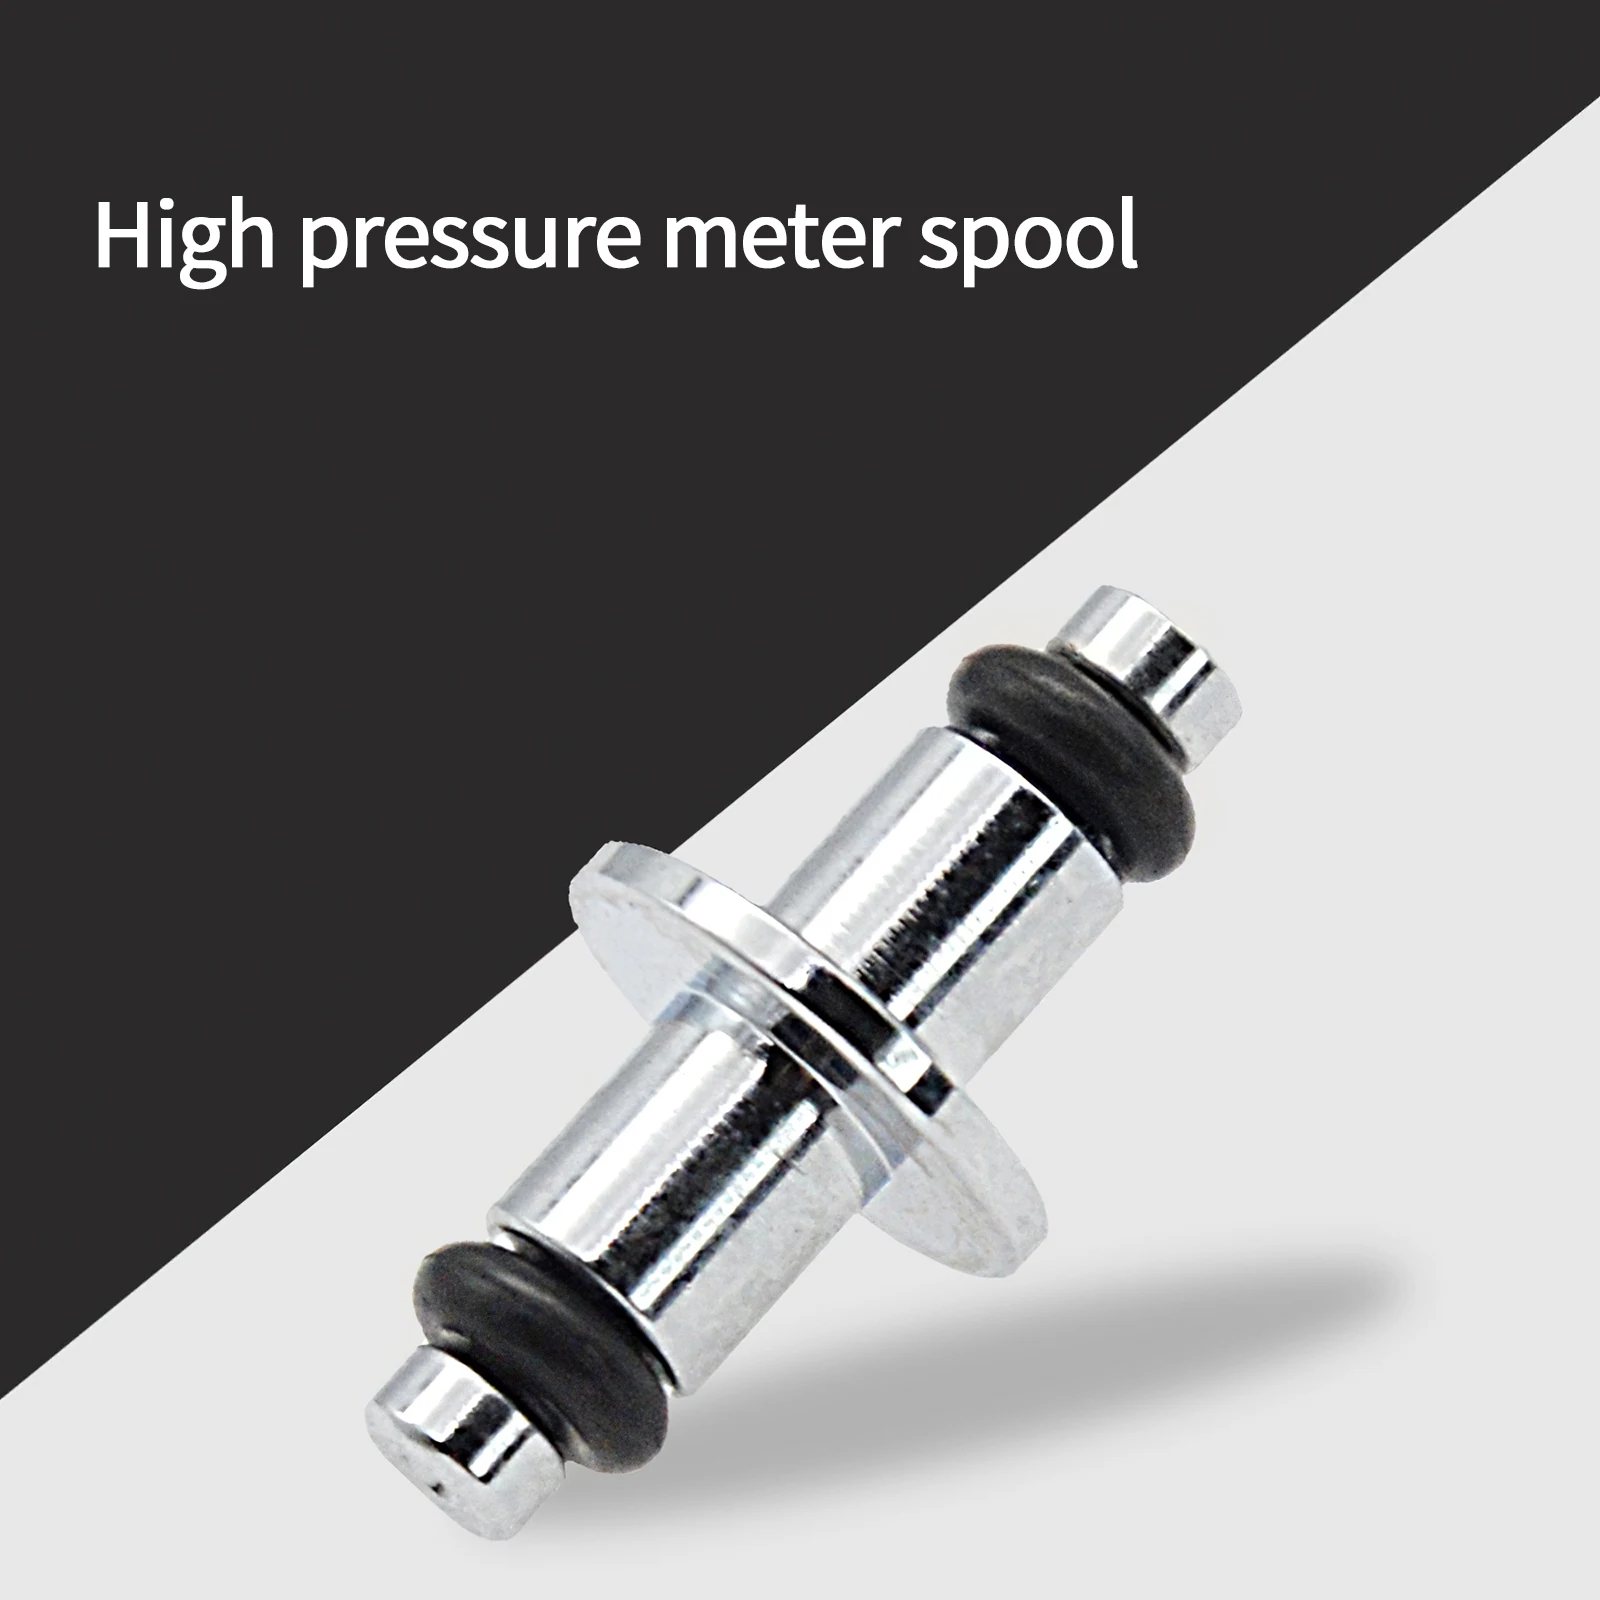 

Катушка Поворотная высокого давления, изысканная катушка с поворотным кольцом, практичный прибор для измерения высокого давления